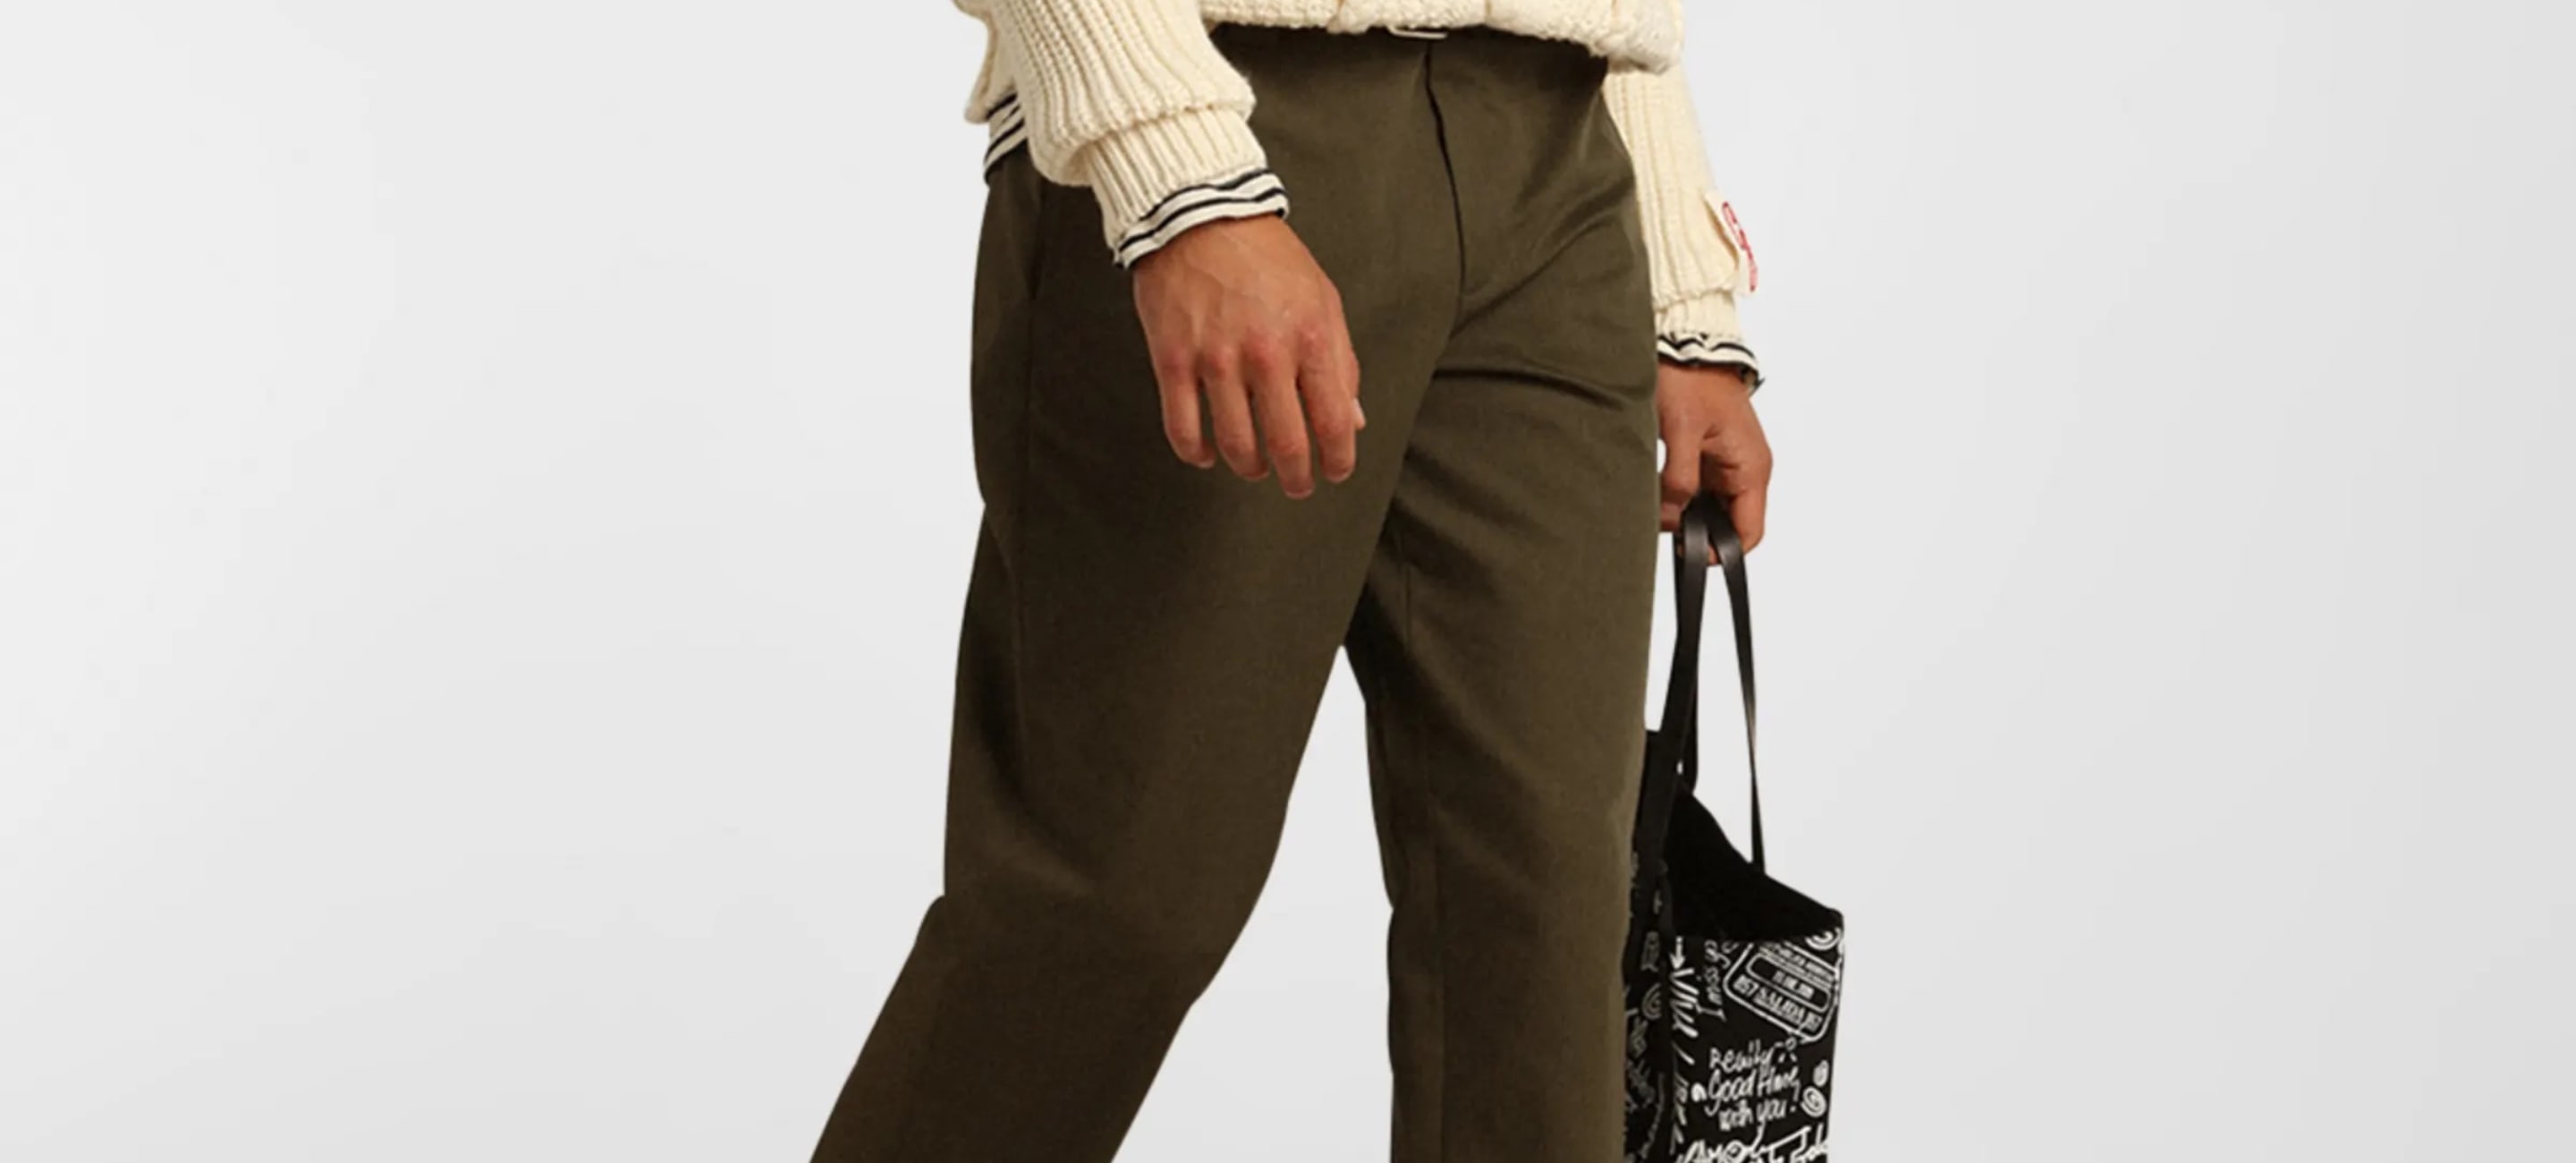 Uniqlo Men Smart Comfort Cotton Ankle Length Trousers (Beige, Large)